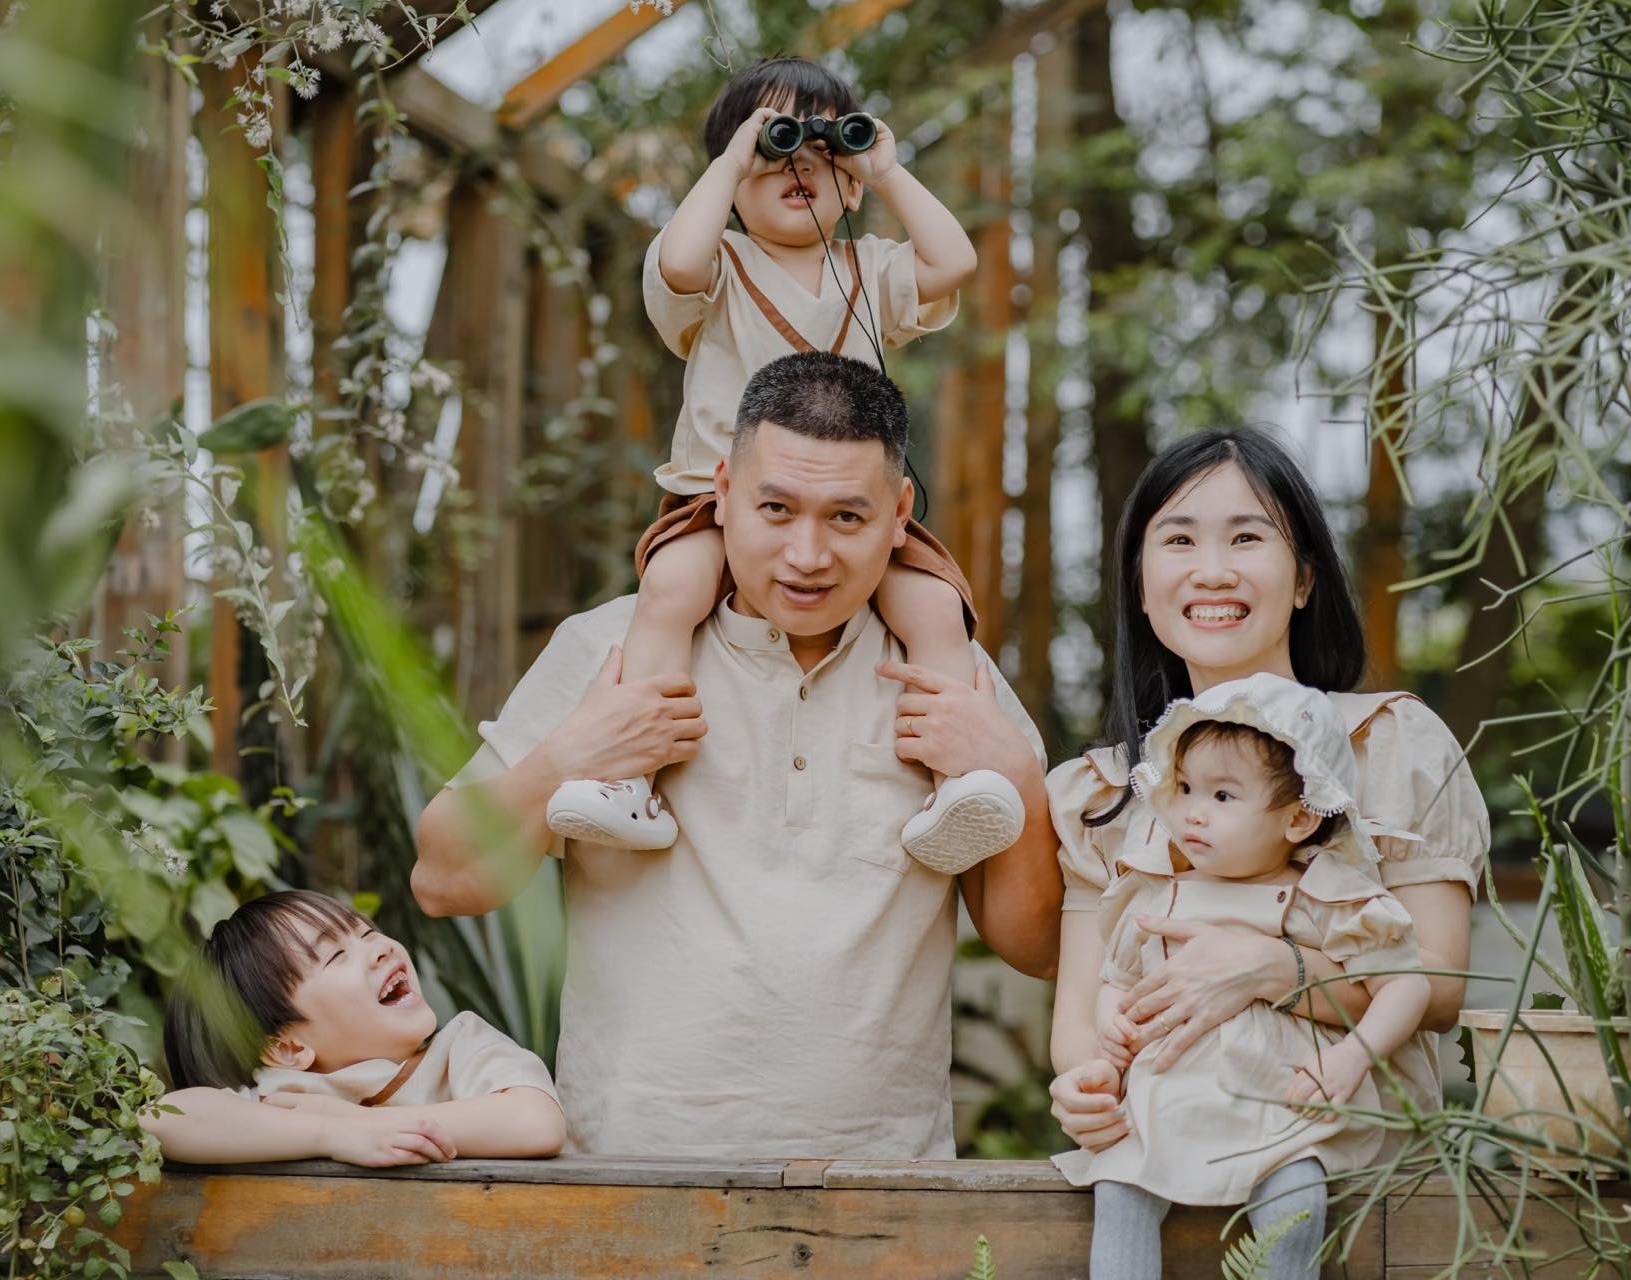 Chàng rể Hà Nội tự tay xây nhà cho bố mẹ vợ, hỗ trợ các em vực dậy kinh tế